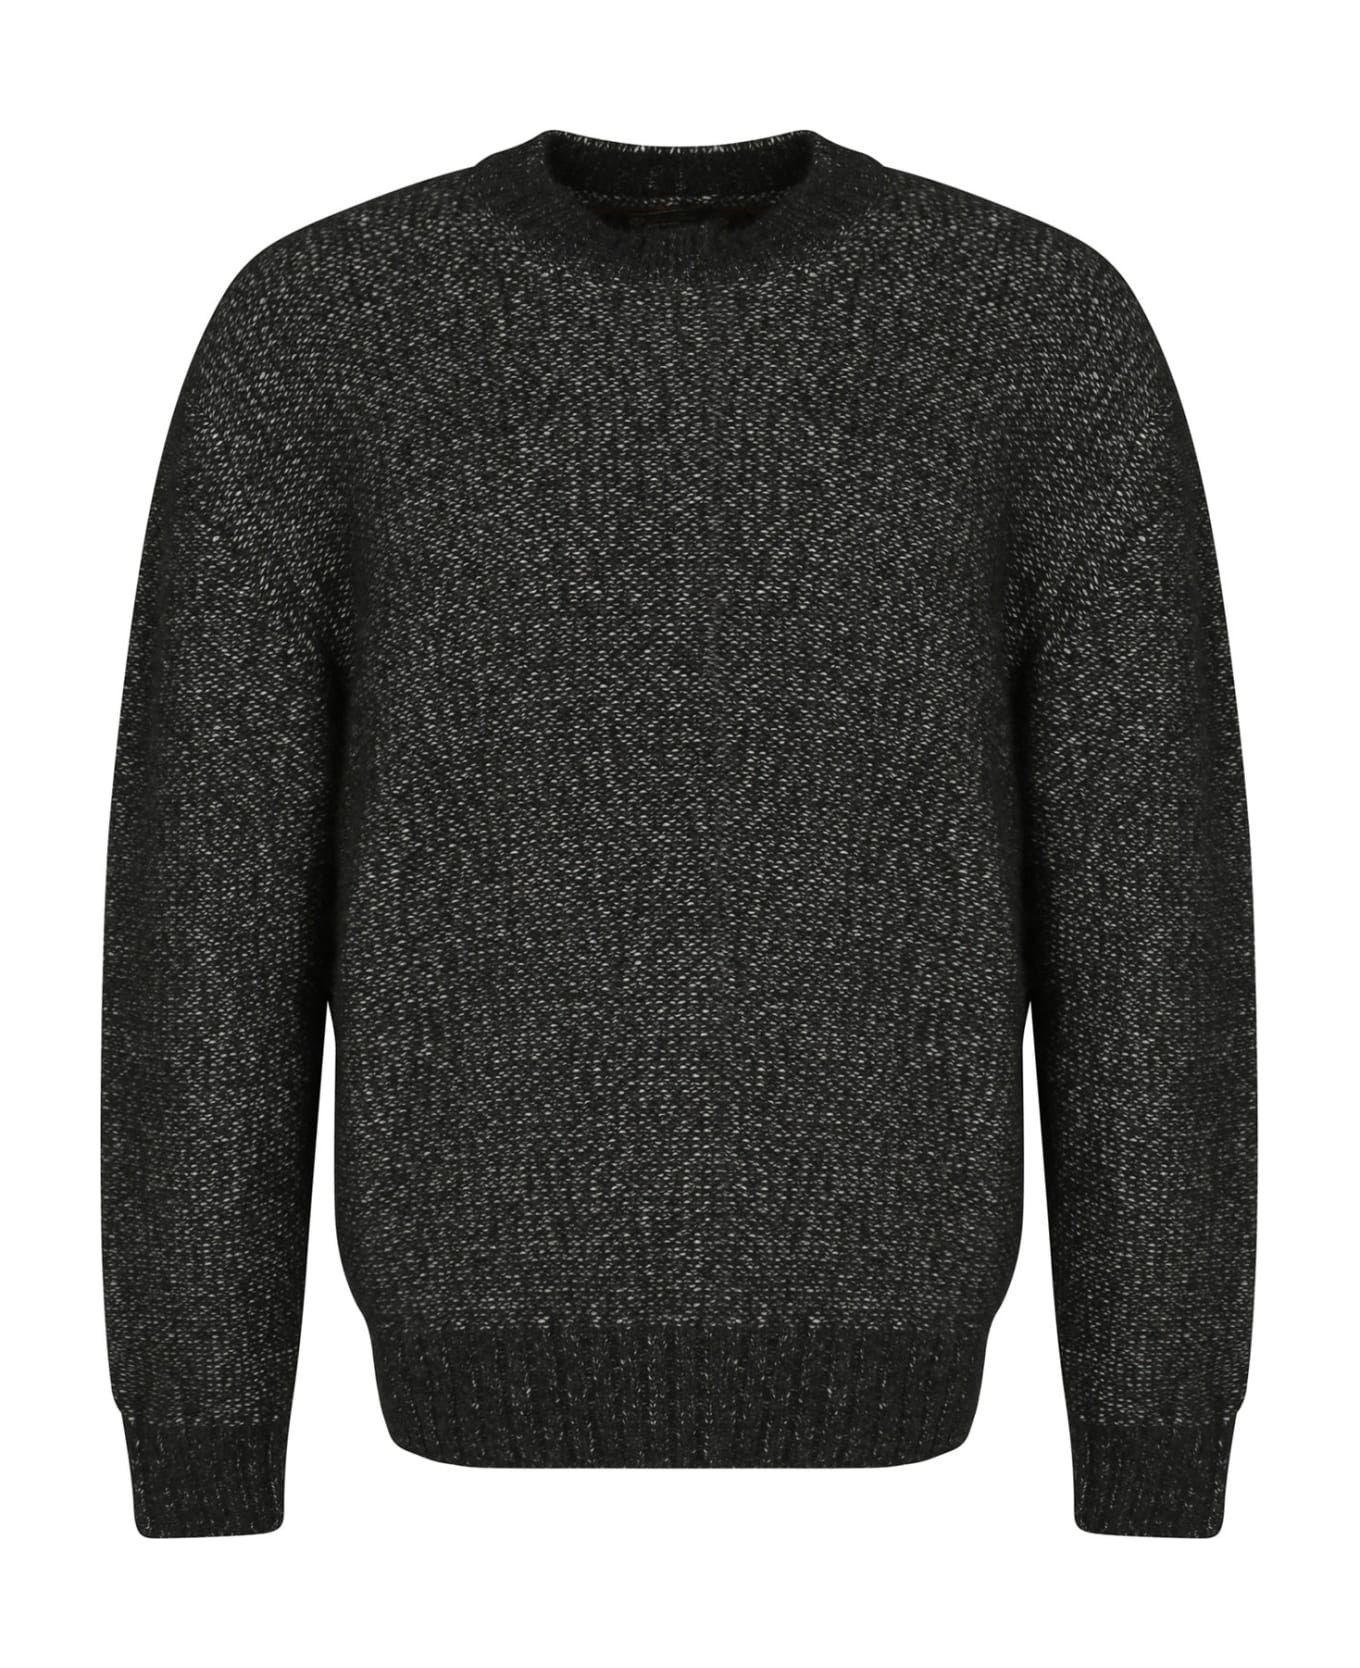 Loro Piana Dunstan Sweater - Black ニットウェア